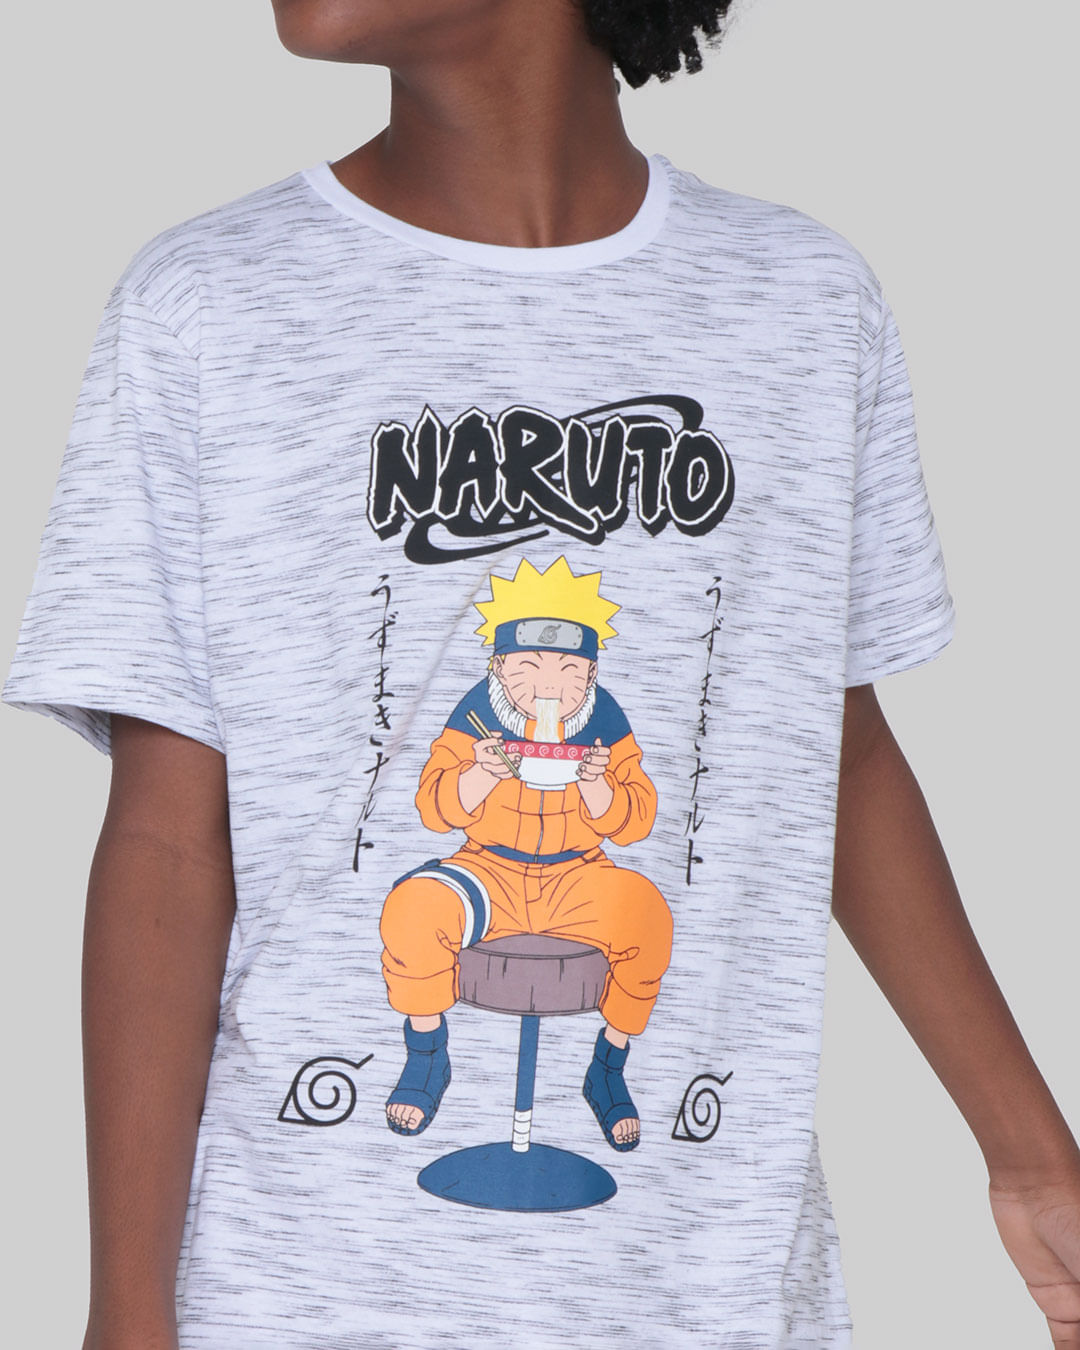 Camiseta-T35750-Mc-M-1016-Naruto---Mescla-Claro